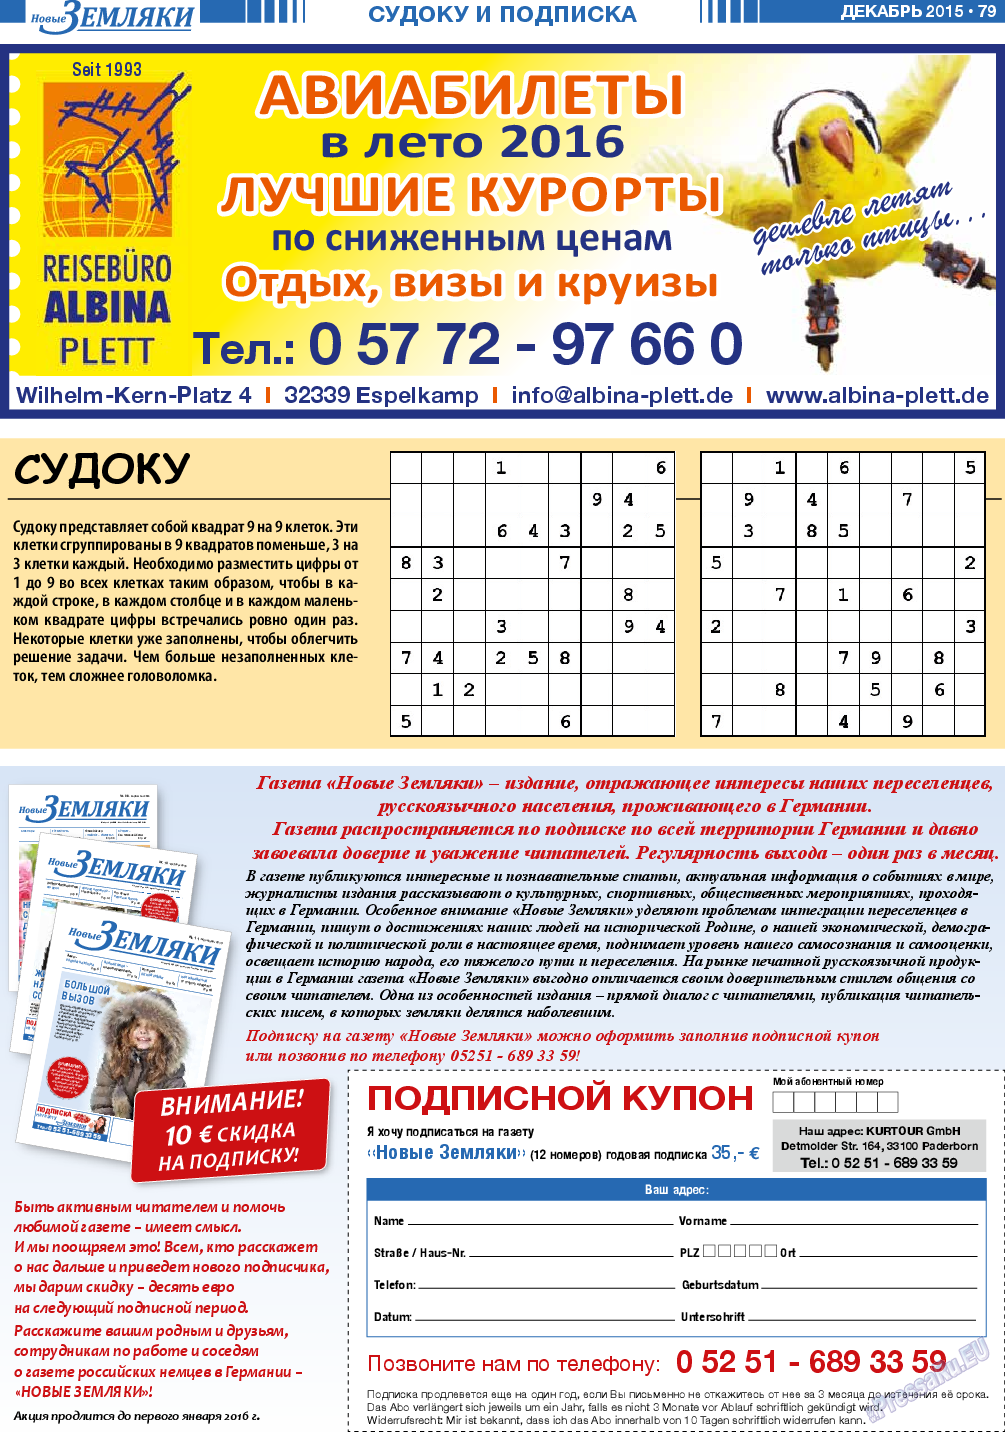 Новые Земляки, газета. 2015 №12 стр.79